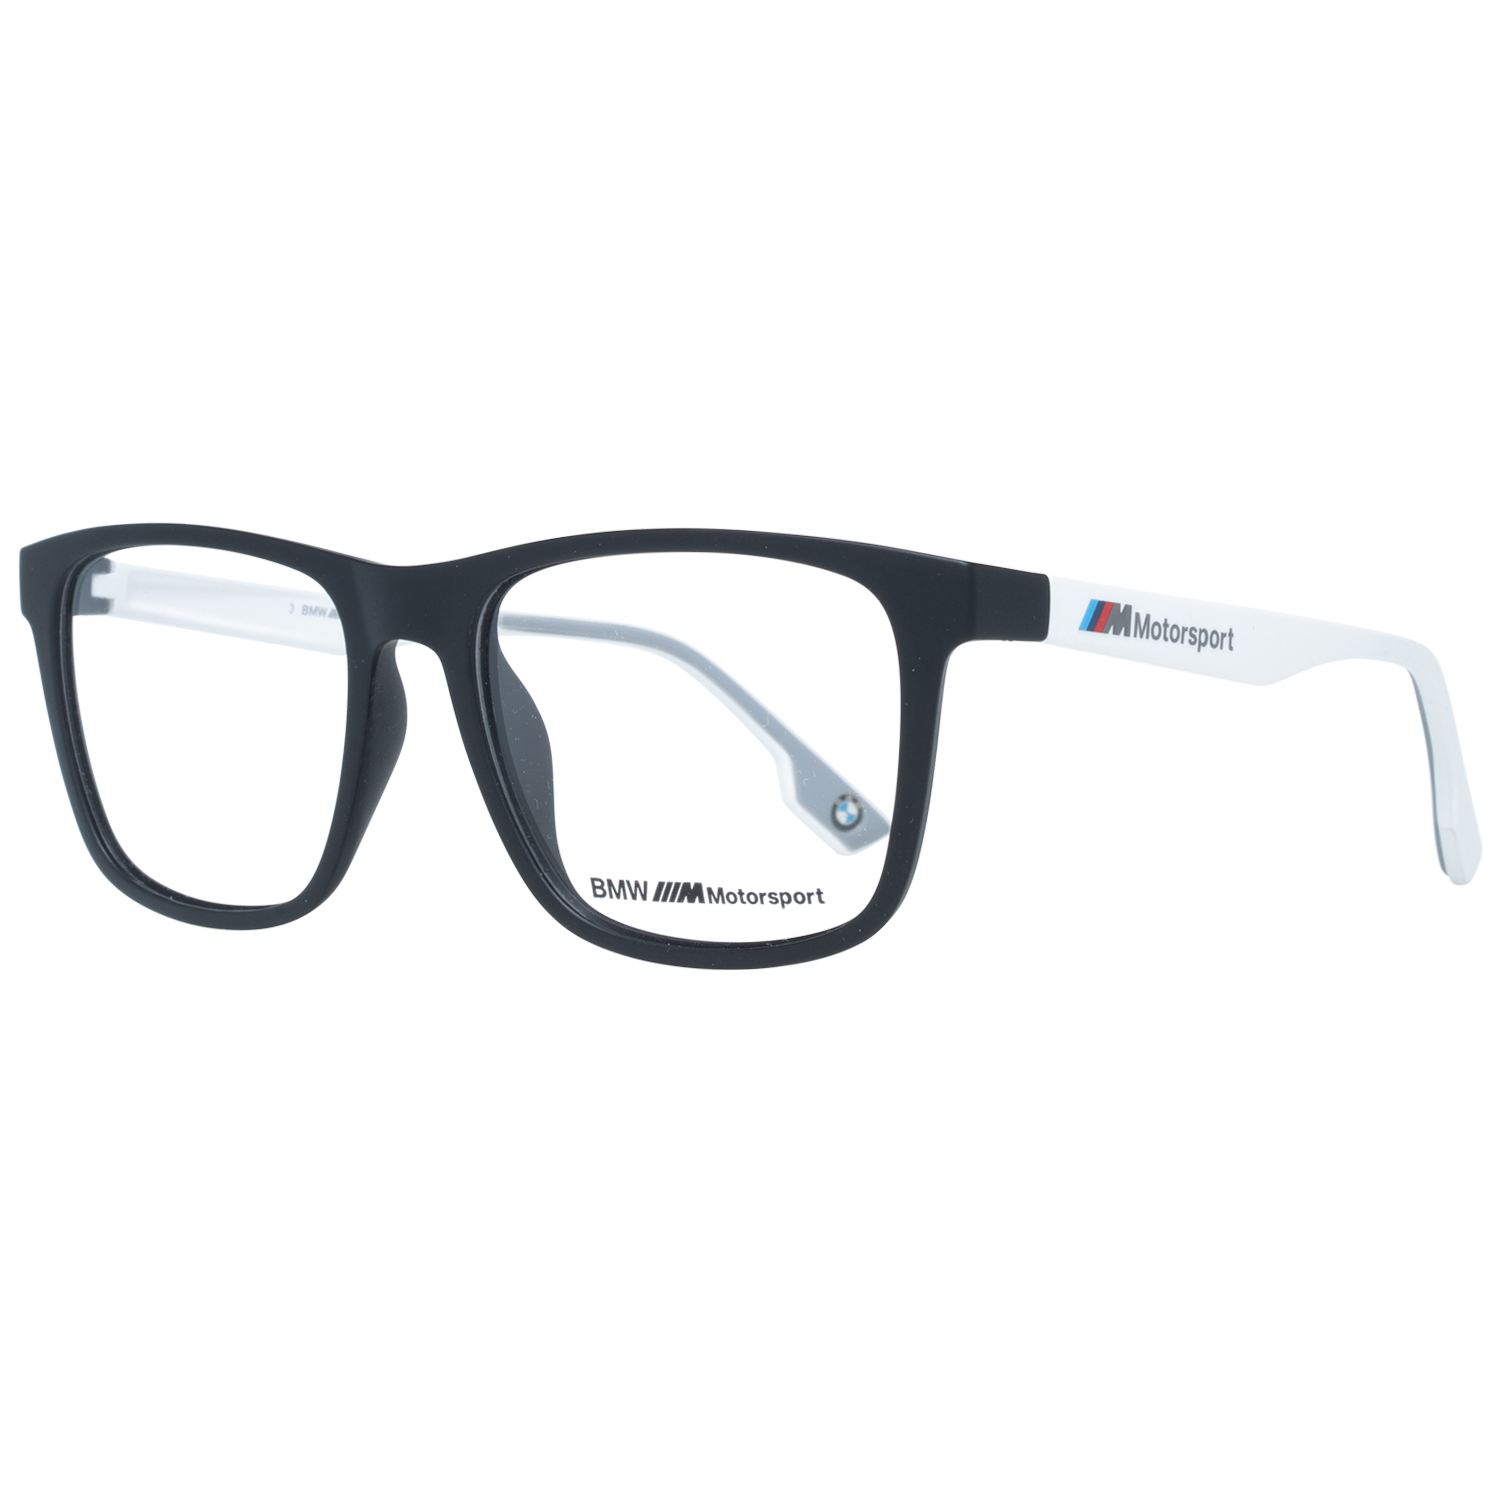 BMW Motorsport Frames BMW Motorsport Glasses Frames BS5006 002 55mm Eyeglasses Eyewear UK USA Australia 